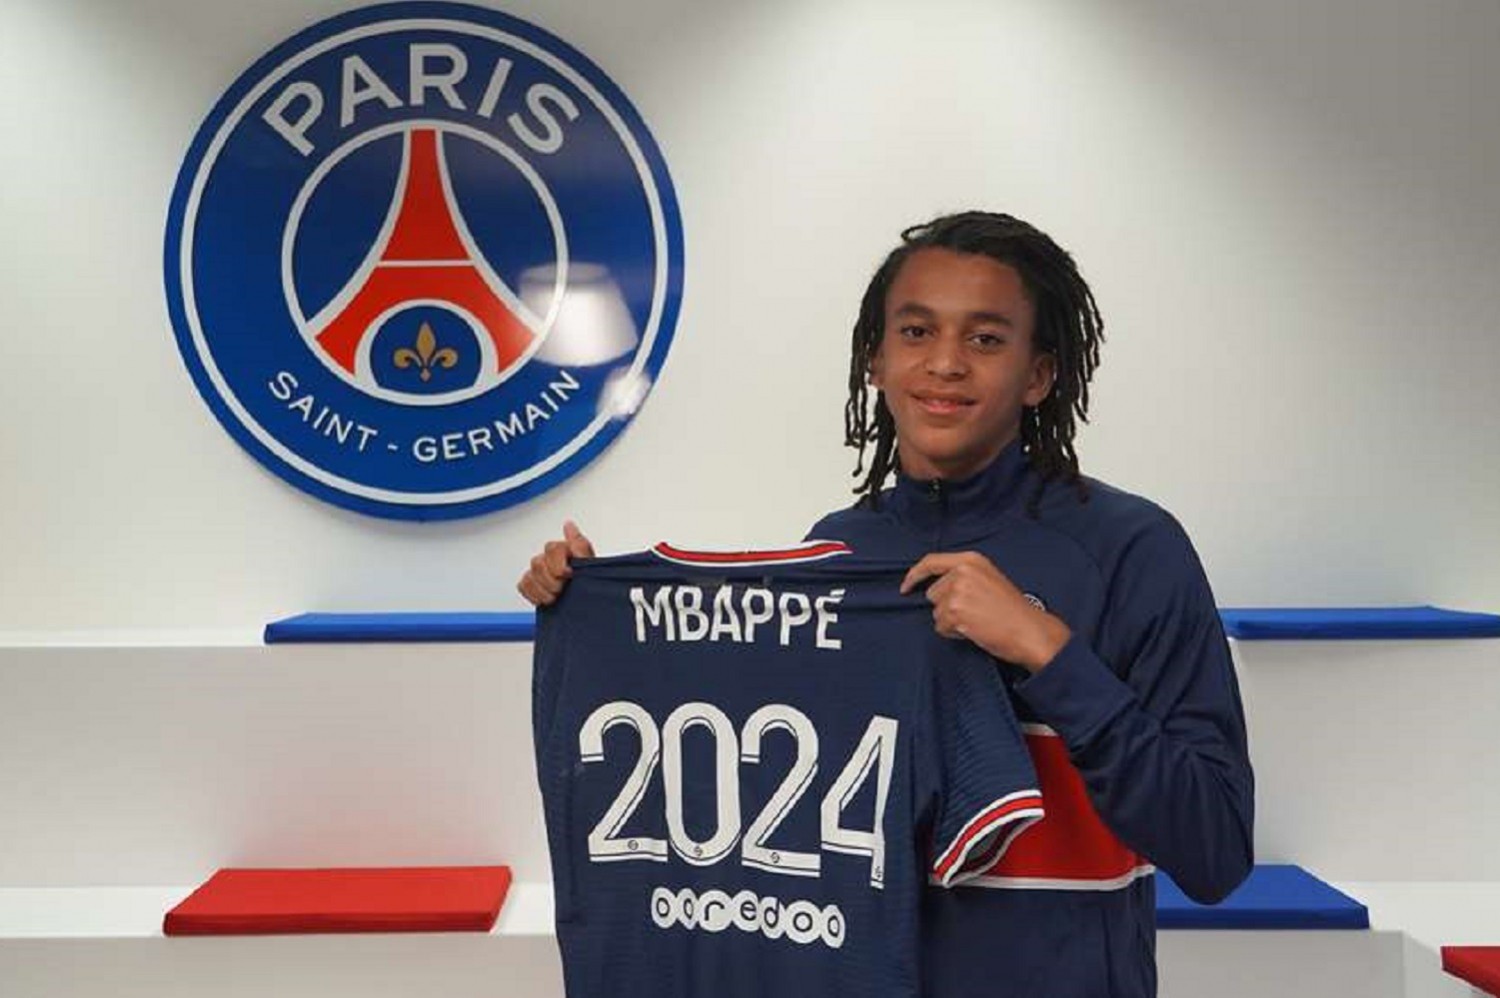 Ethan Mbappé podpisał kontrakt z PSG [OFICJALNIE]